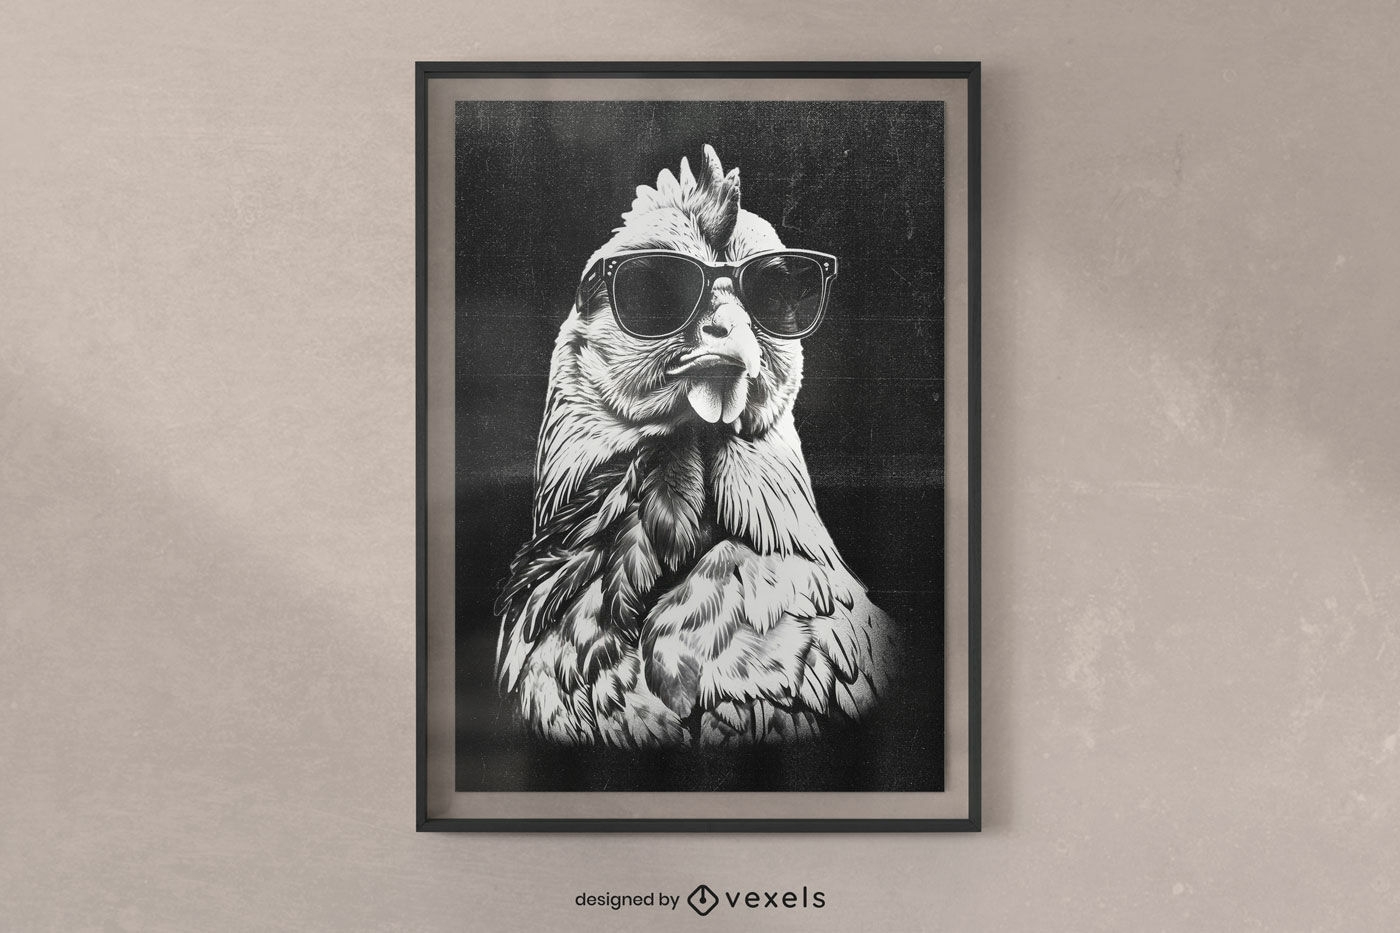 Diseño de cartel de pollo con gafas de sol.